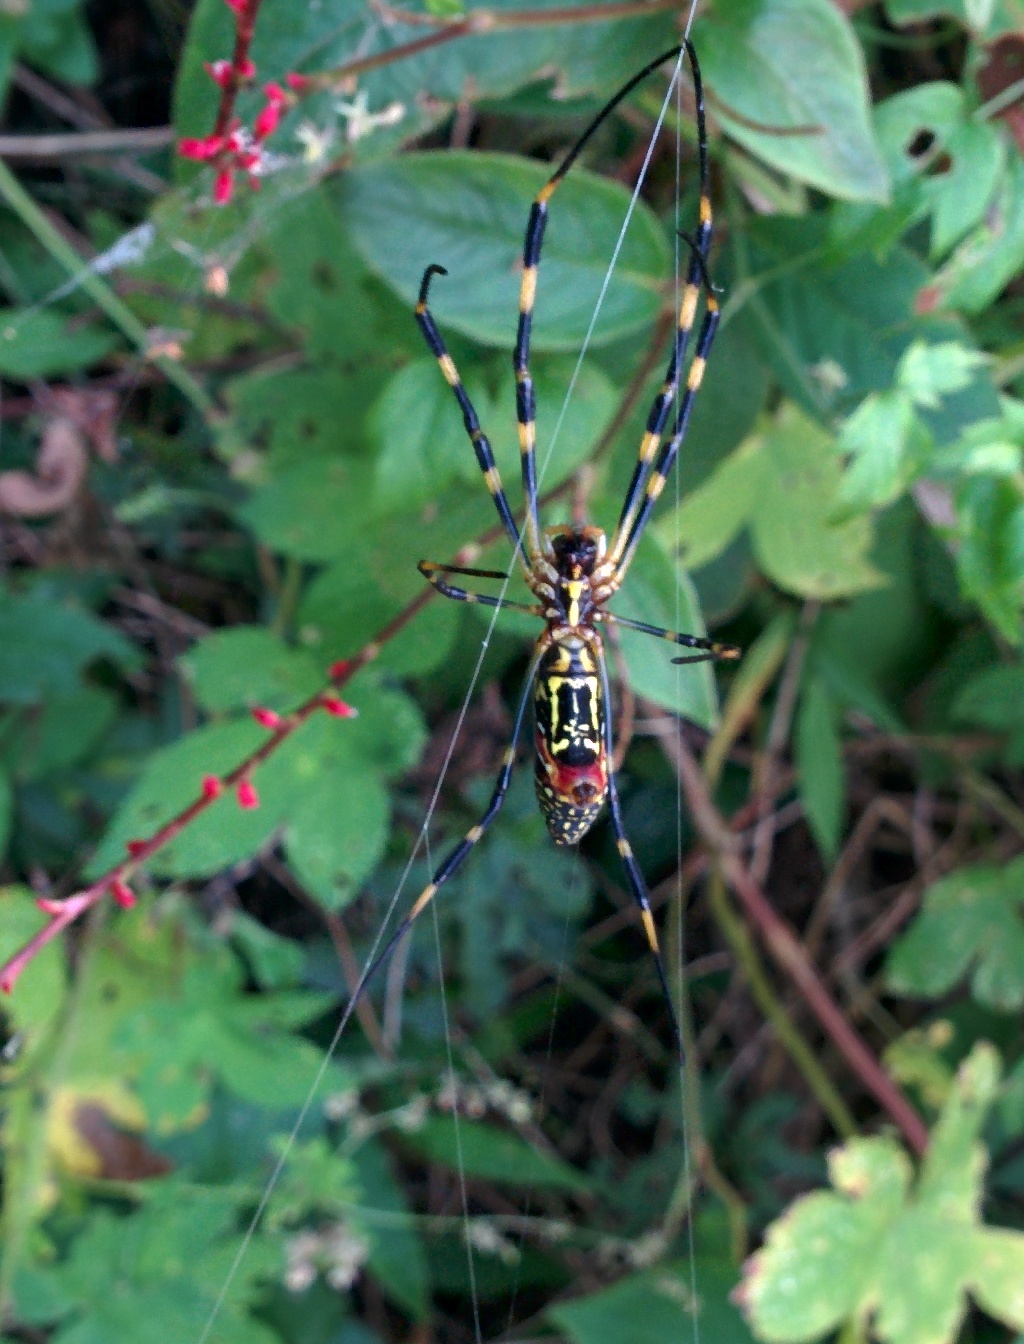 IMG_20150911_112915.jpg 제법 덩치가 큰 무당거미 암컷, 거미줄로 도망